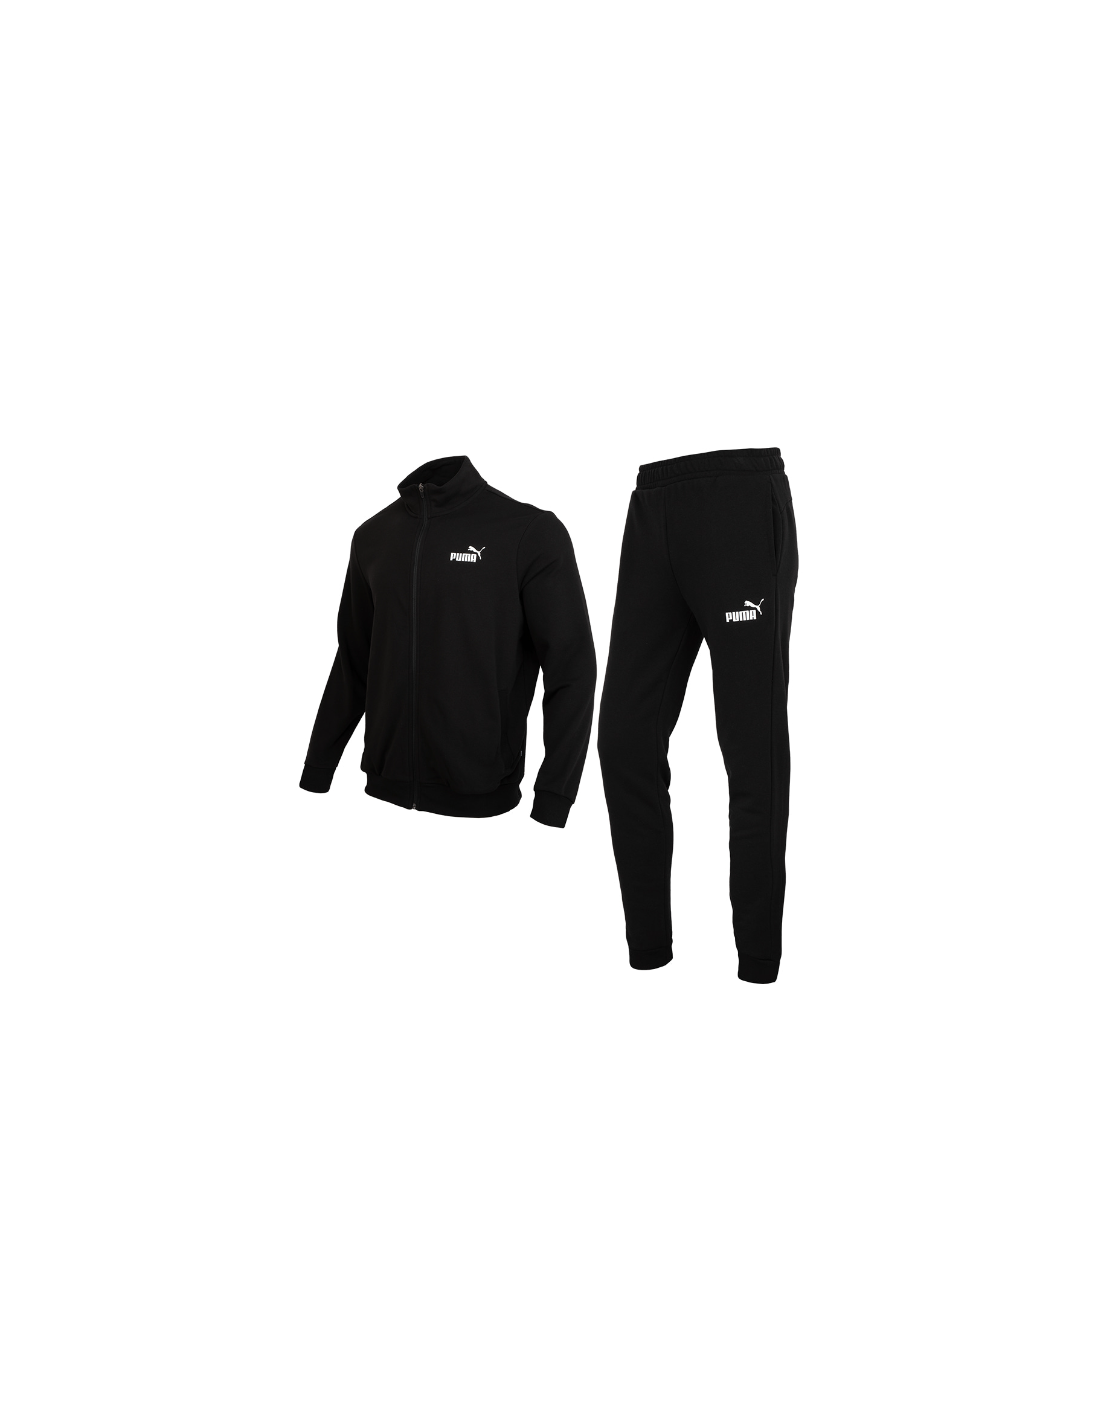 Tracksuit Puma Clean Sweat Suit M 585840 01